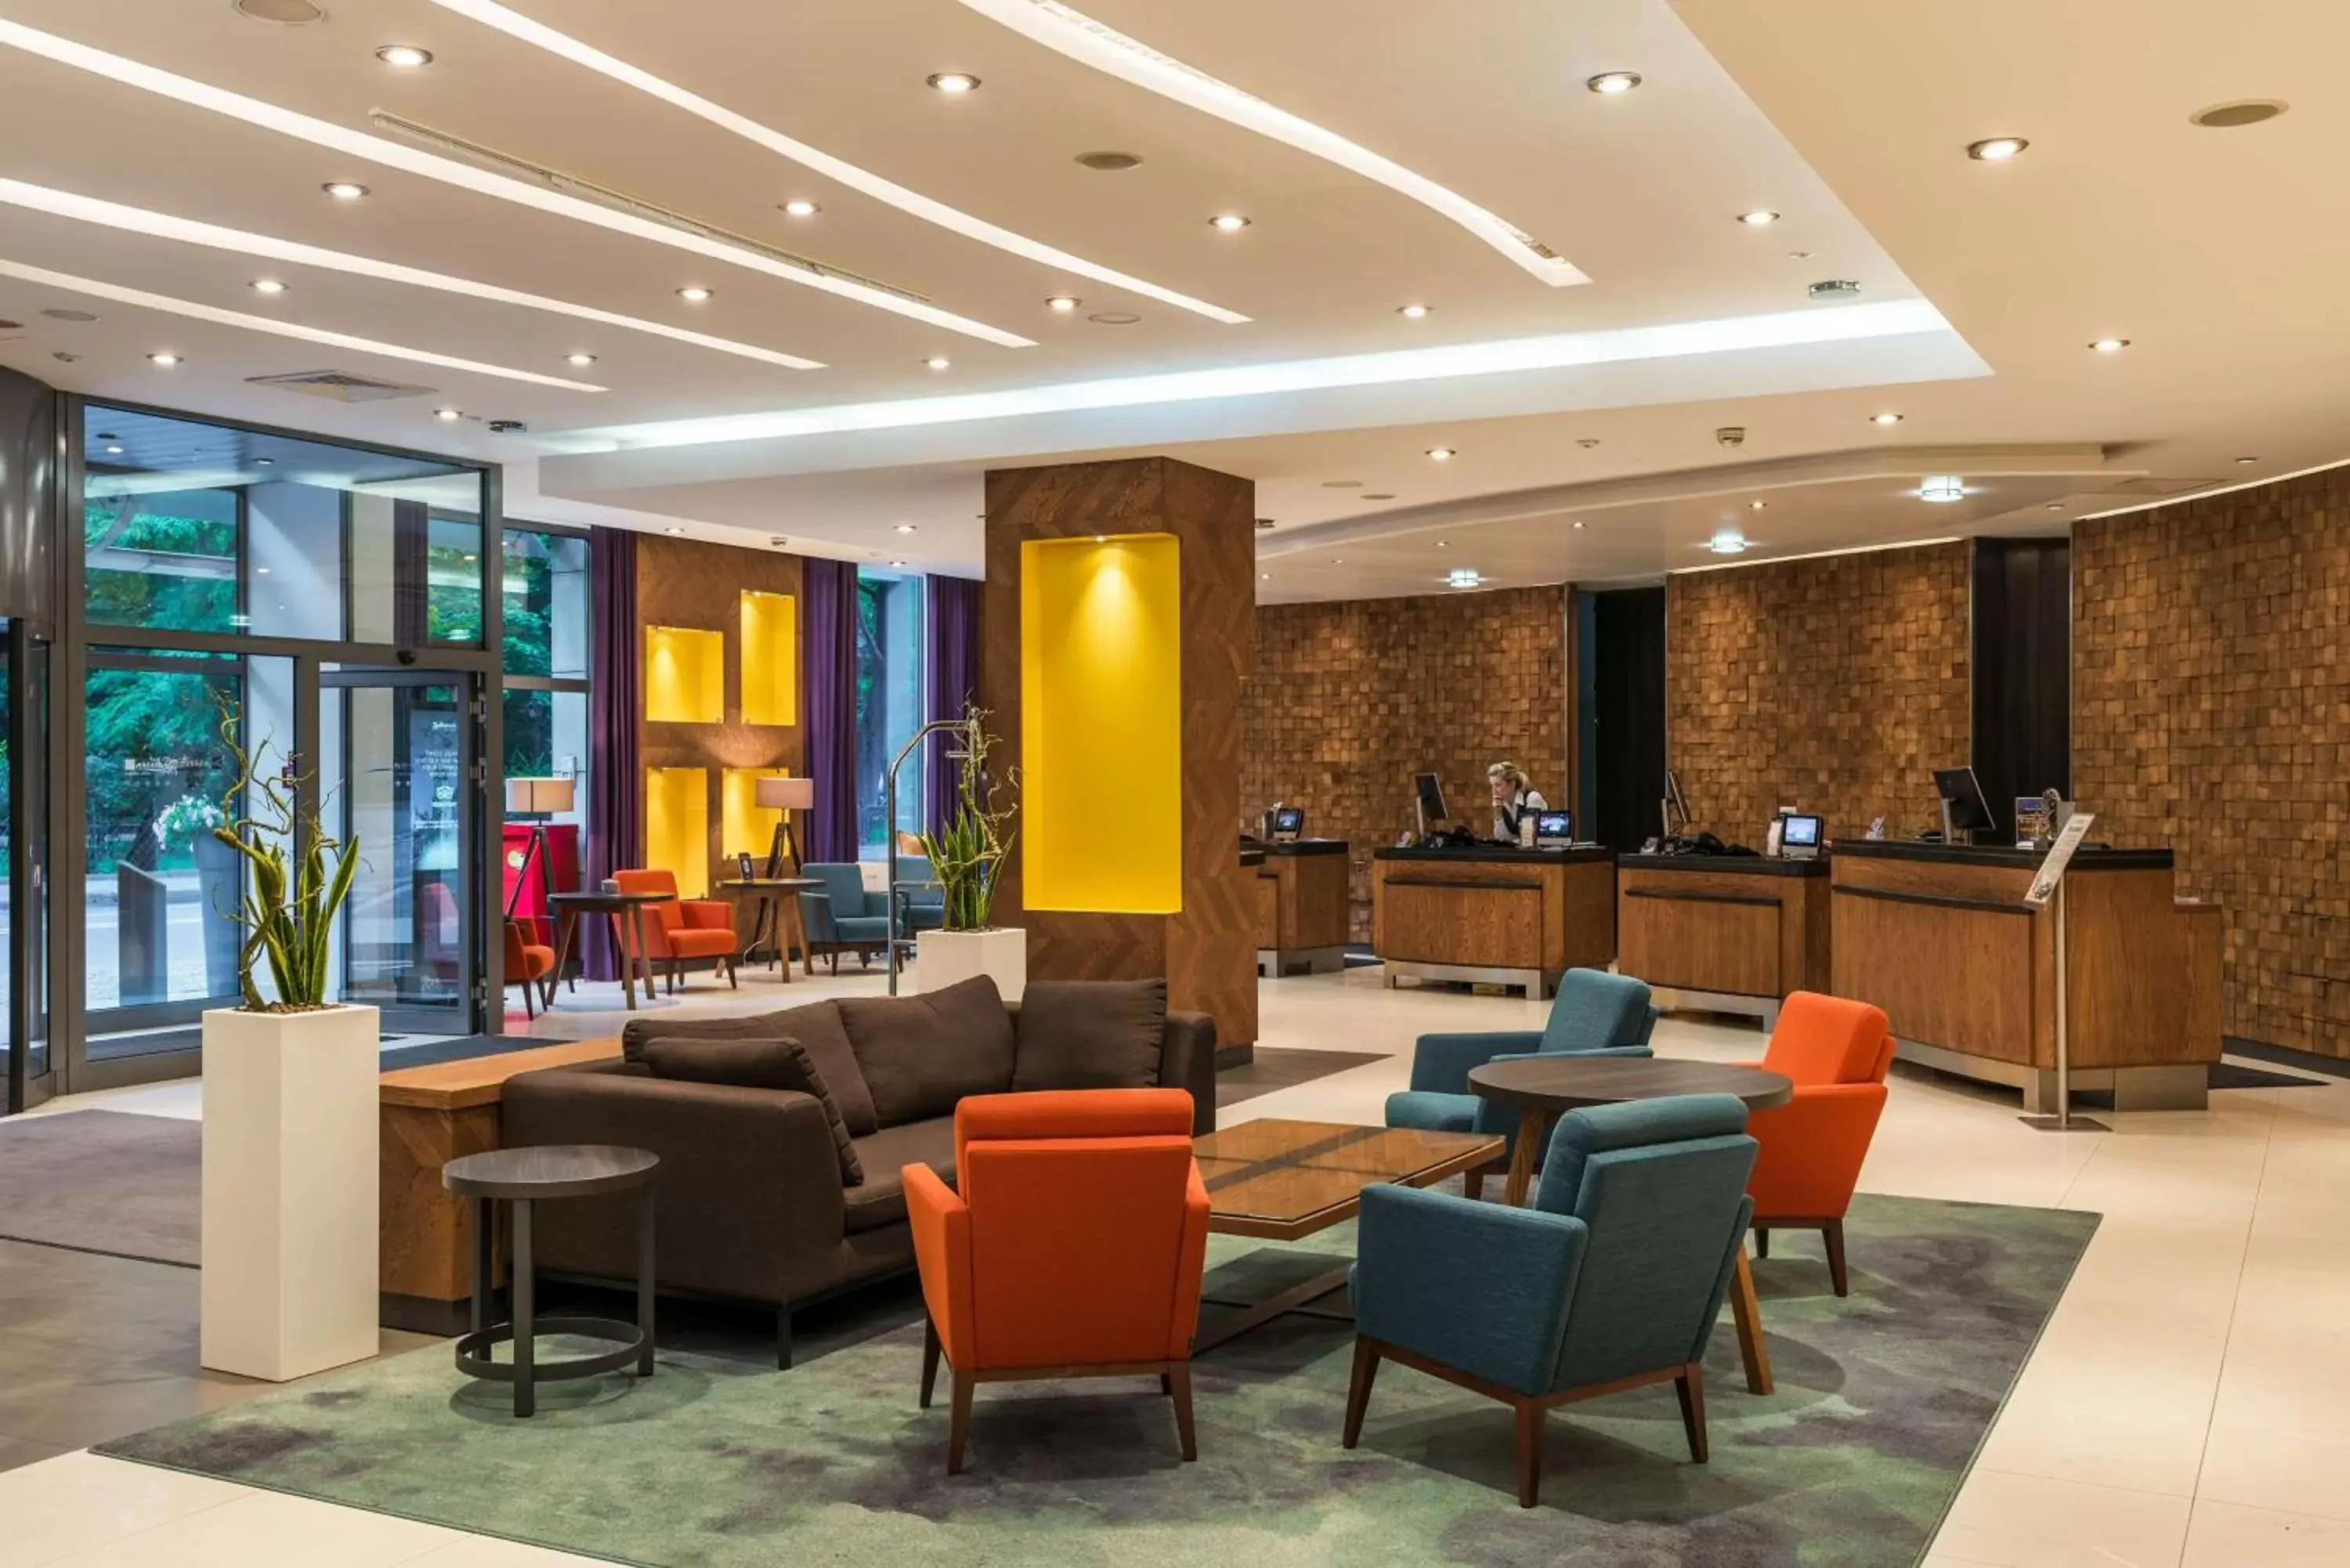 Lobby or reception, Lobby/Reception in Radisson Blu Hotel Krakow